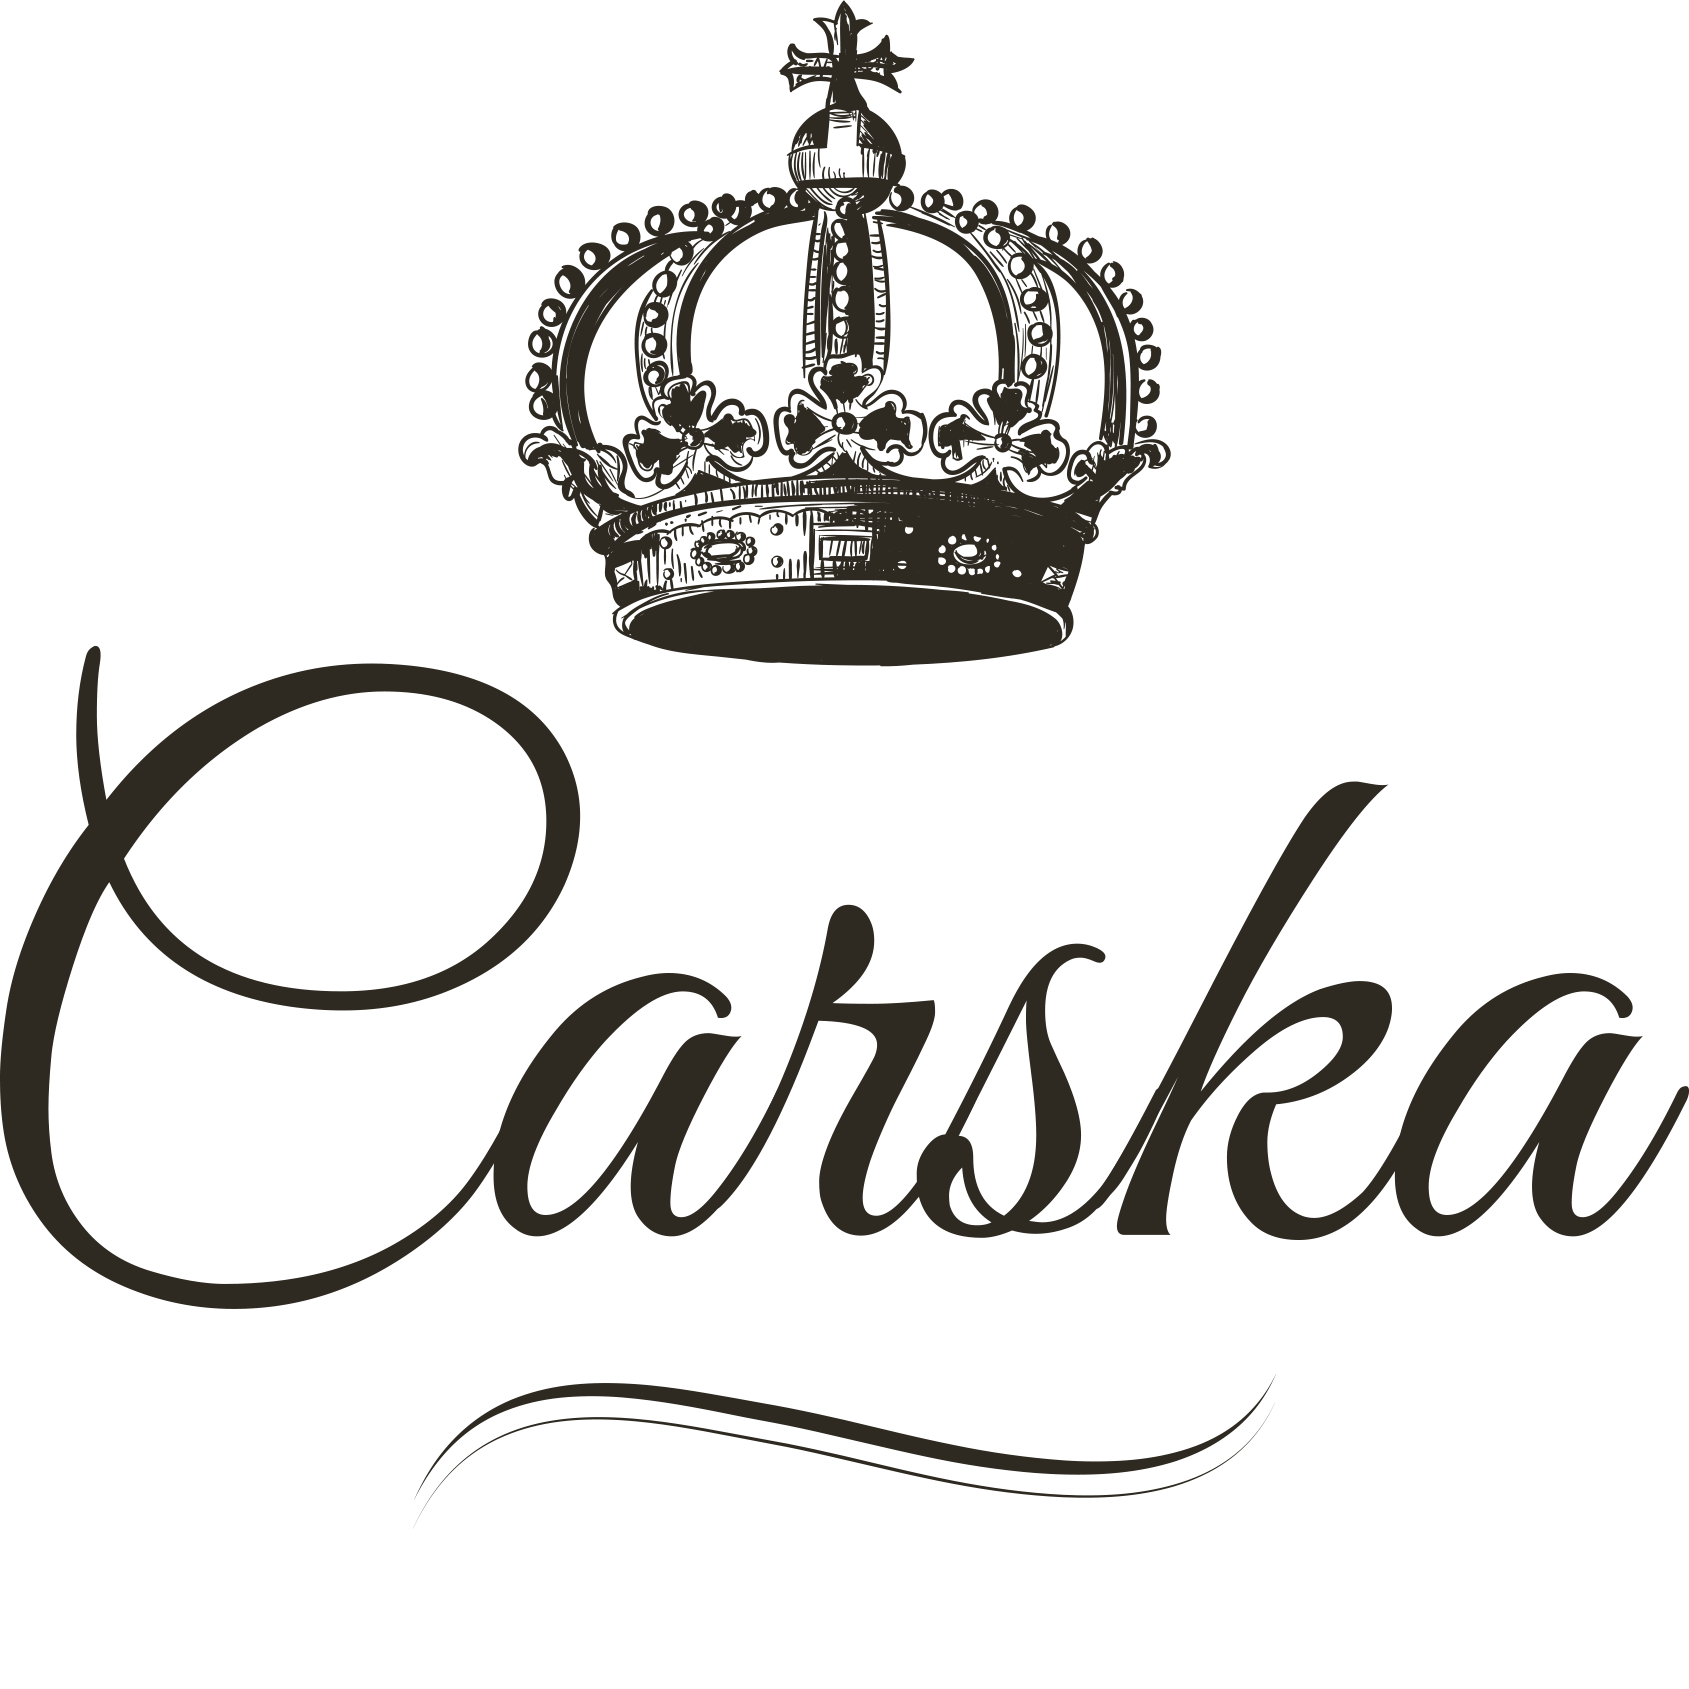 Carska